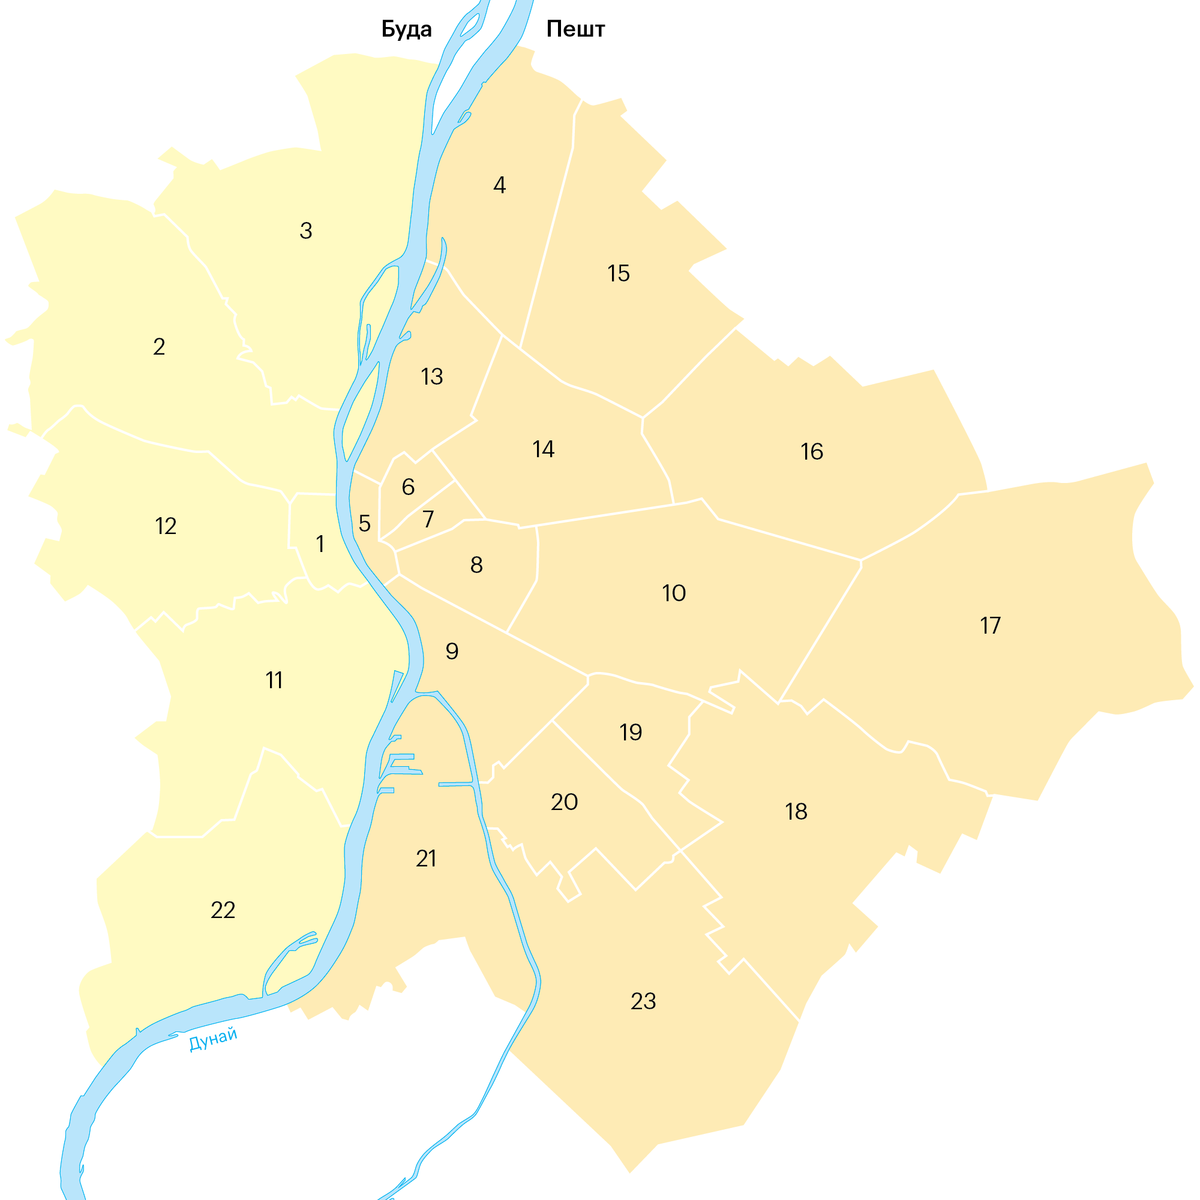 Будапешт стал одним городом только в 1873 году. Раньше это были три маленьких городка — Буда, Пешт и Обуда (сегодня это 3-й район)